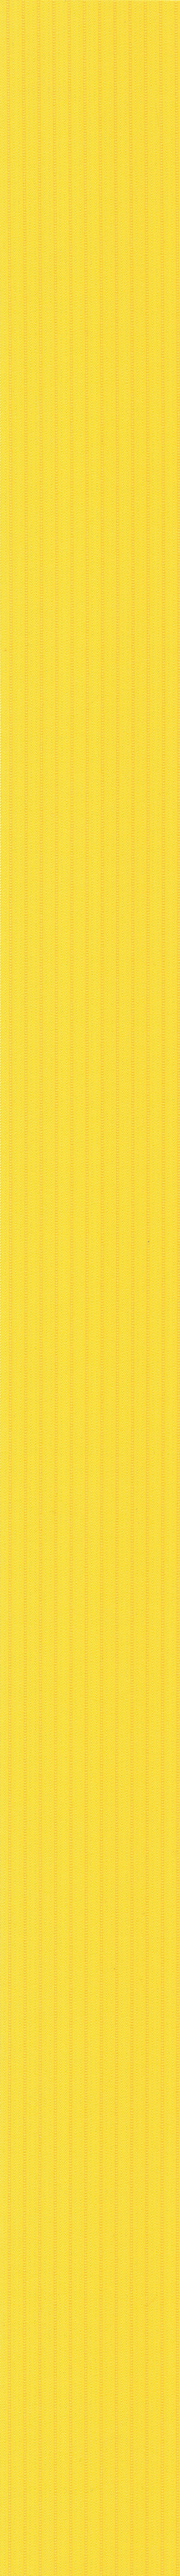 Ткань-Лайн-жёлтый